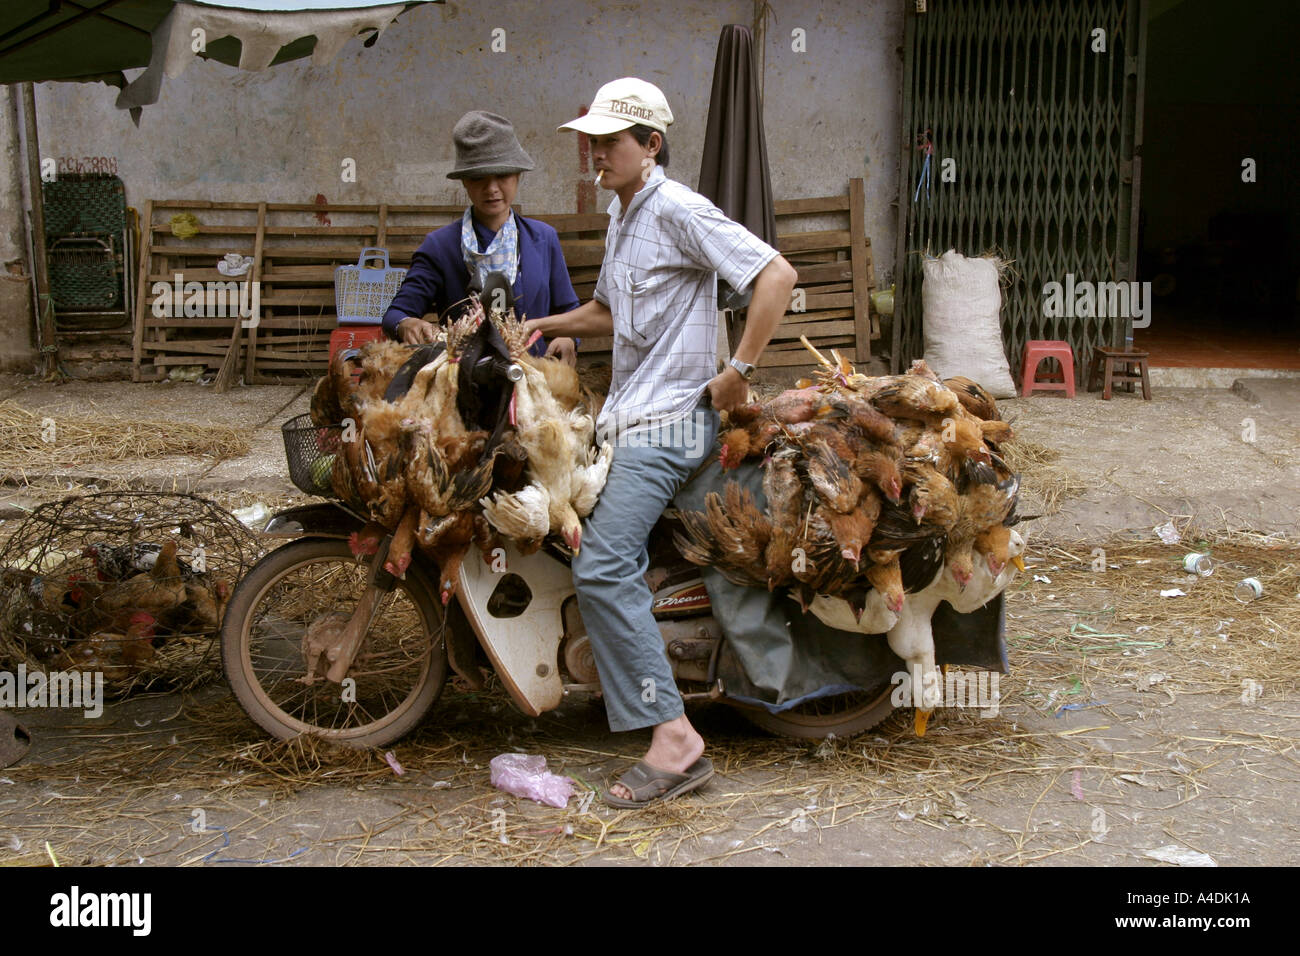 Die Geflügel-Markt Mann auf dem Motorrad beladen mit Hühnern. Saigon, Vietnam Stockfoto